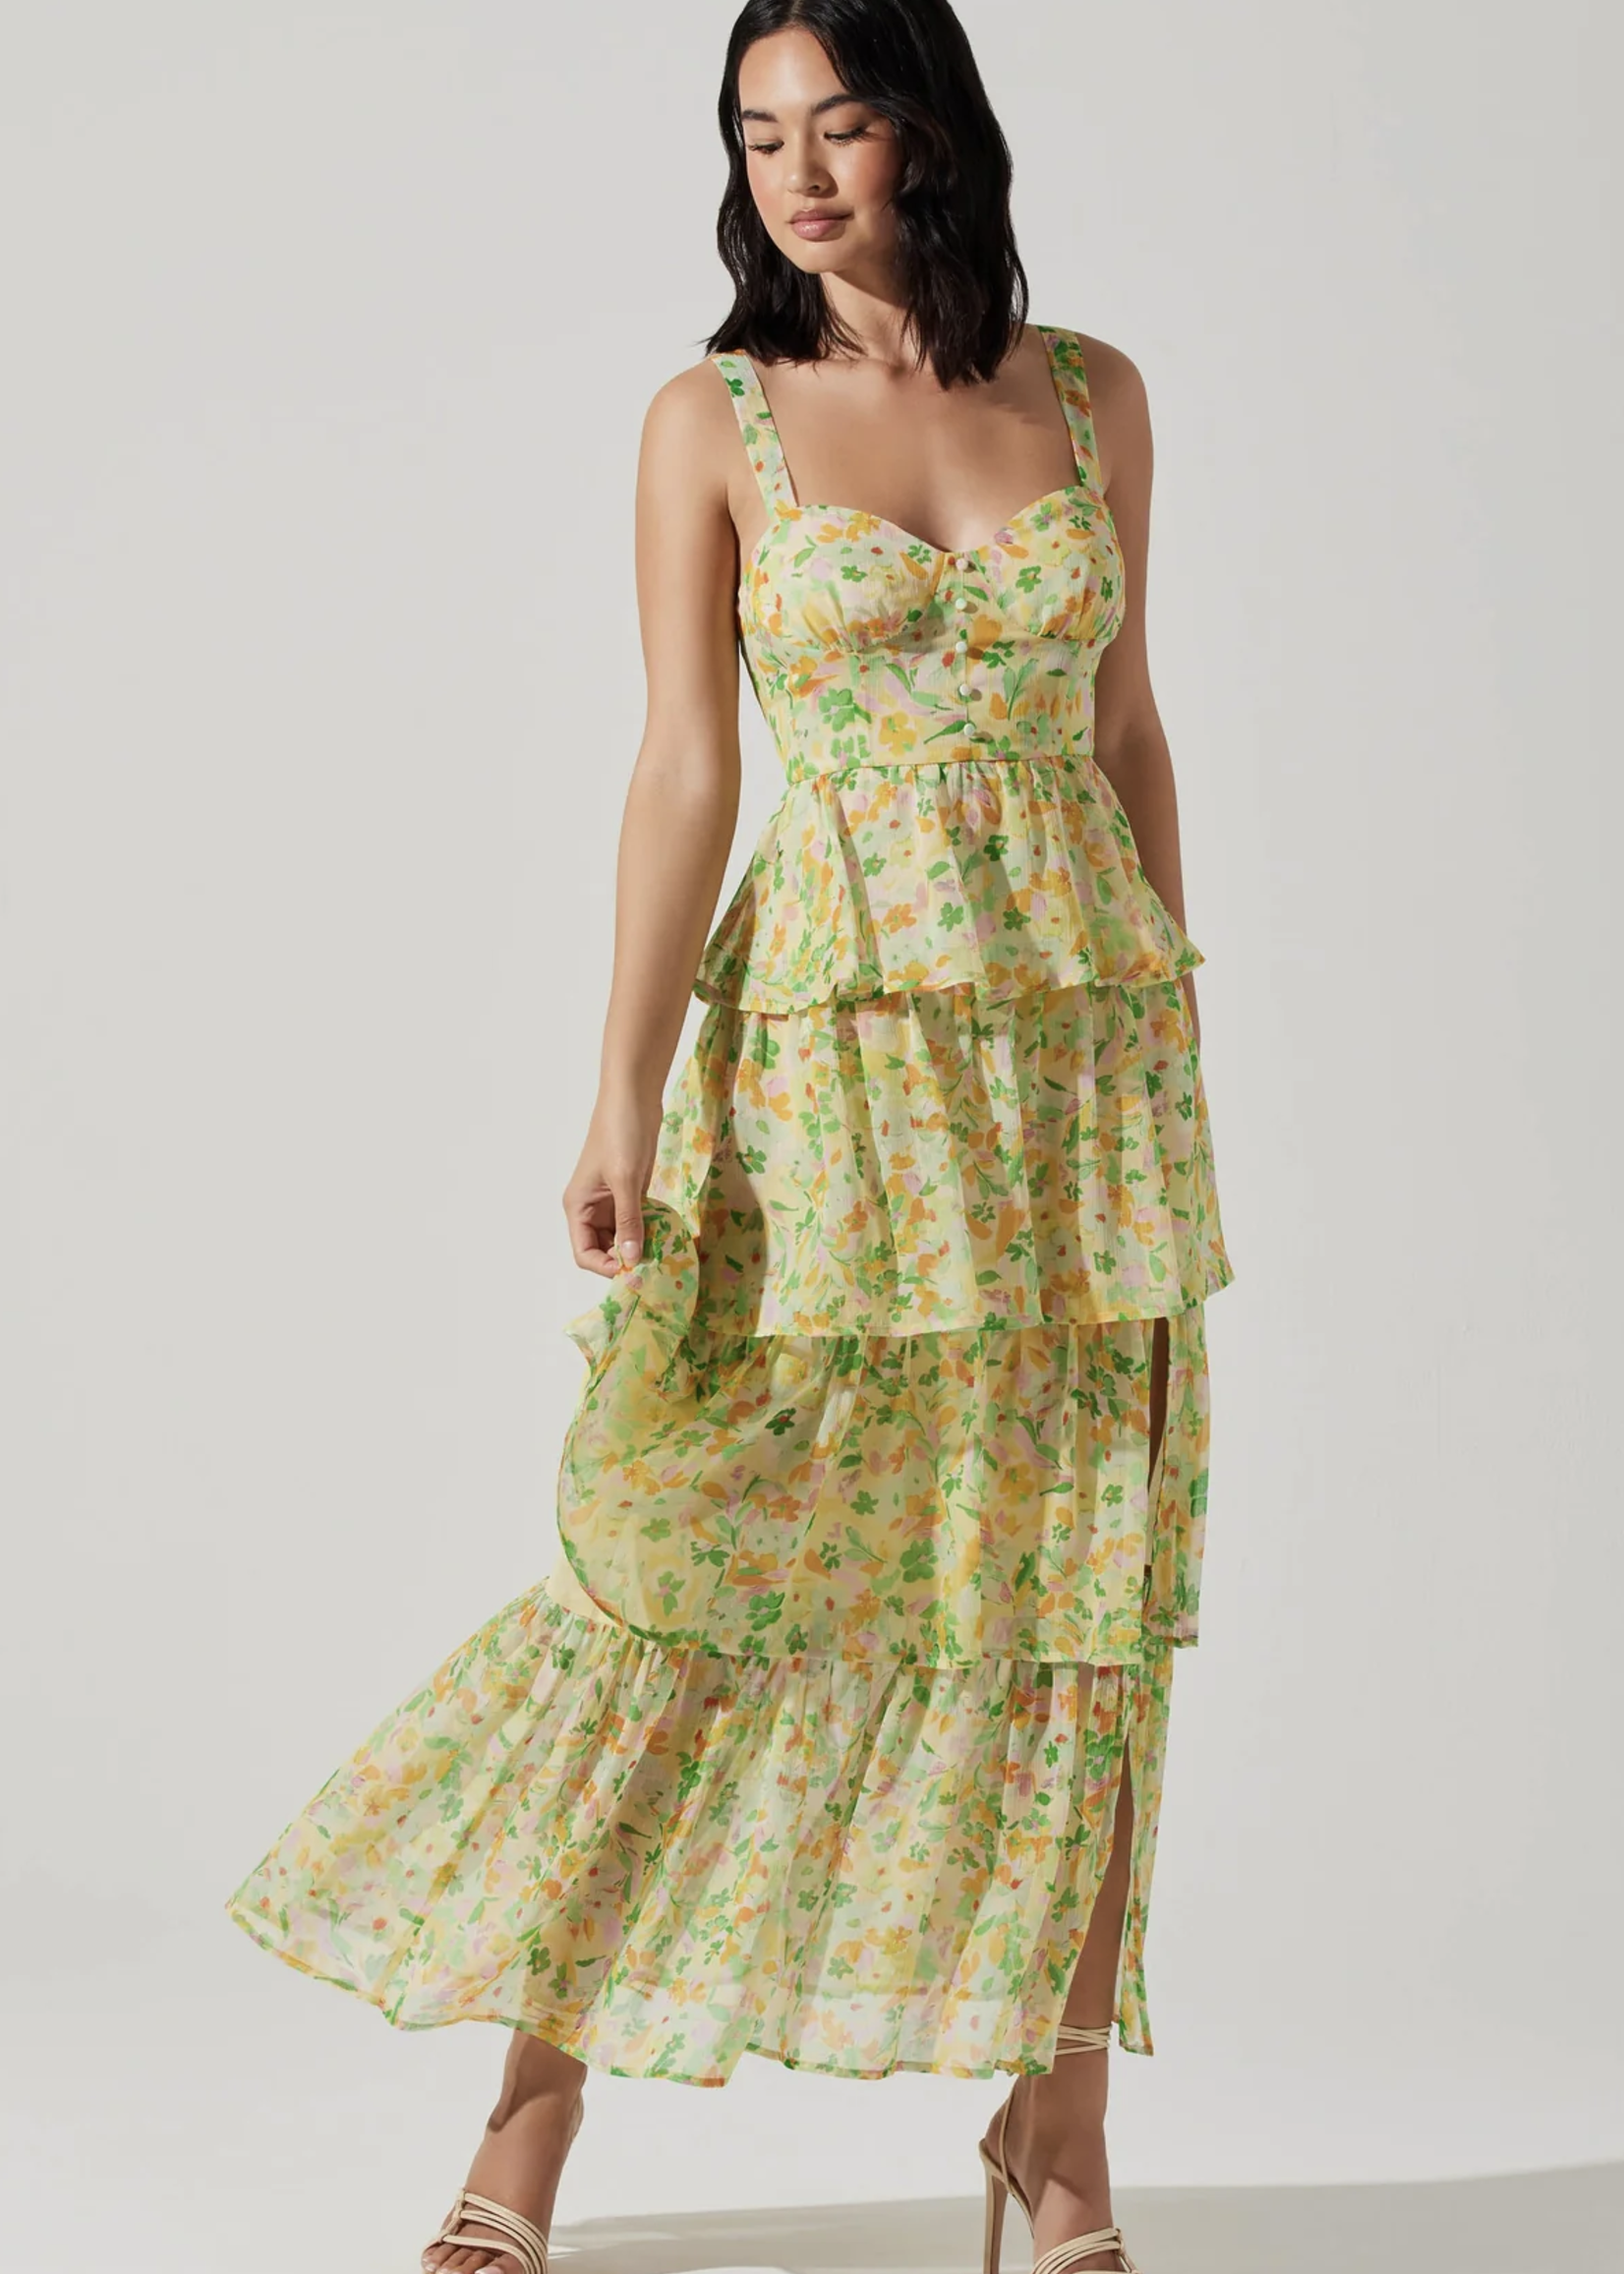 Elitaire Boutique Midsummer Dress